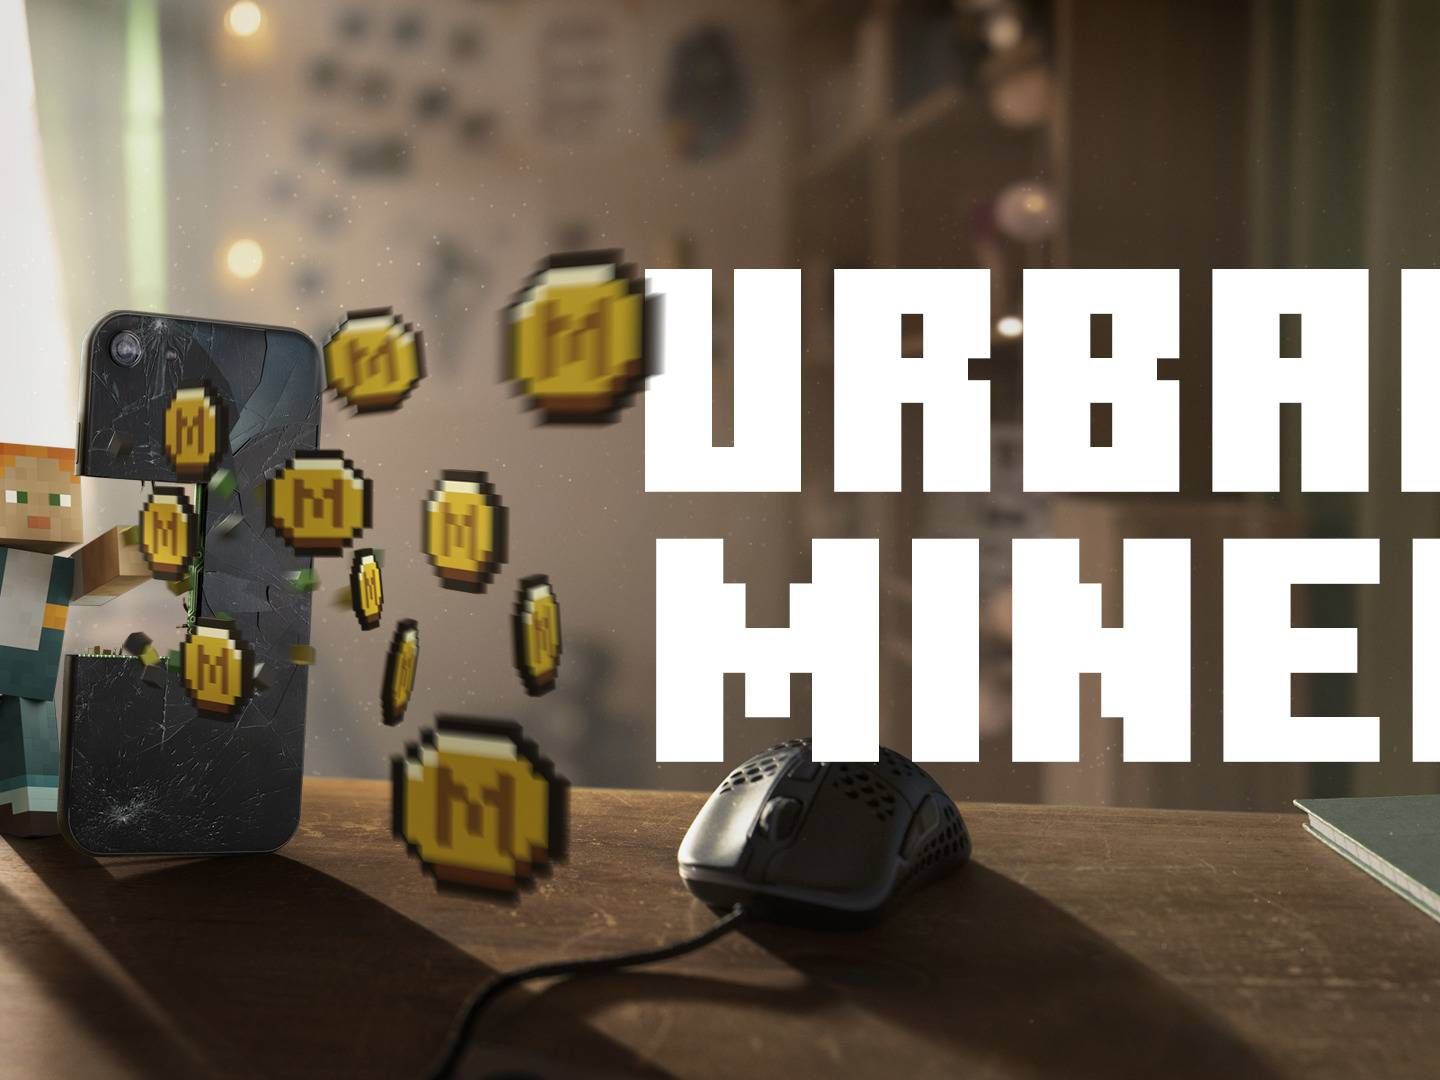 Urban Miner hedder kampagnen, der er udviklet af Elkjøp Nordic-koncernen, Microsoft og et bureau. | Foto: PR